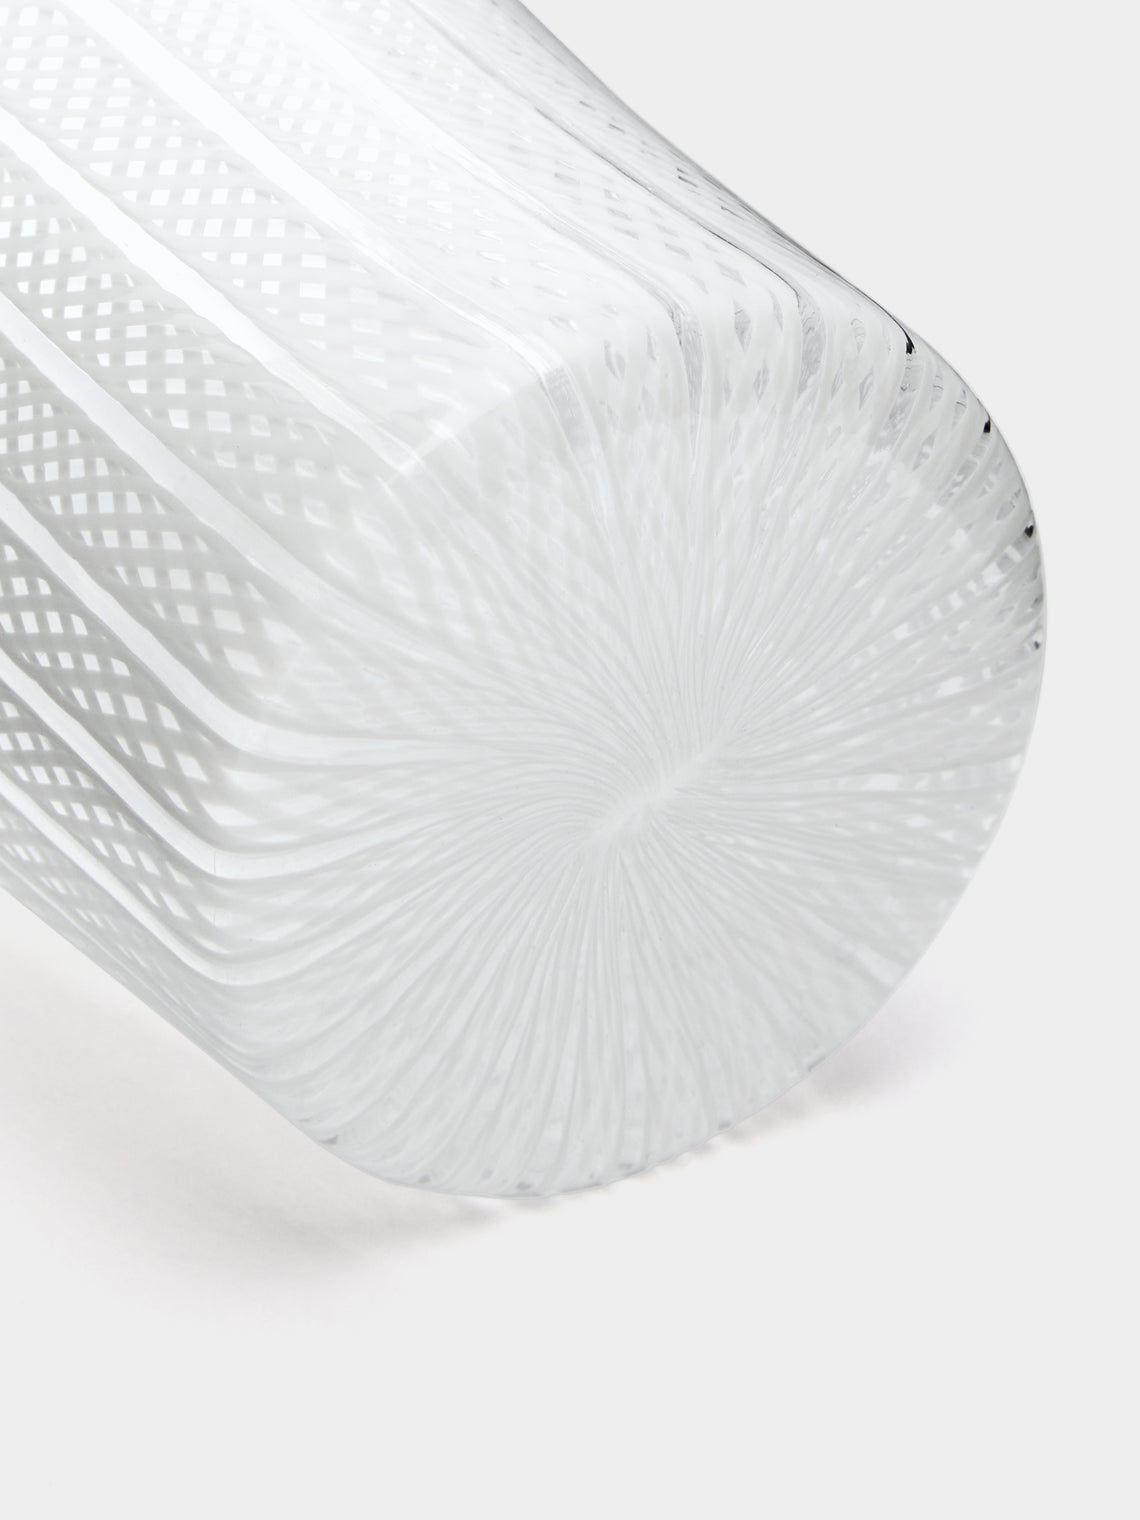 NasonMoretti - Canova Hand-Blown Murano Glass Tumbler - White - ABASK